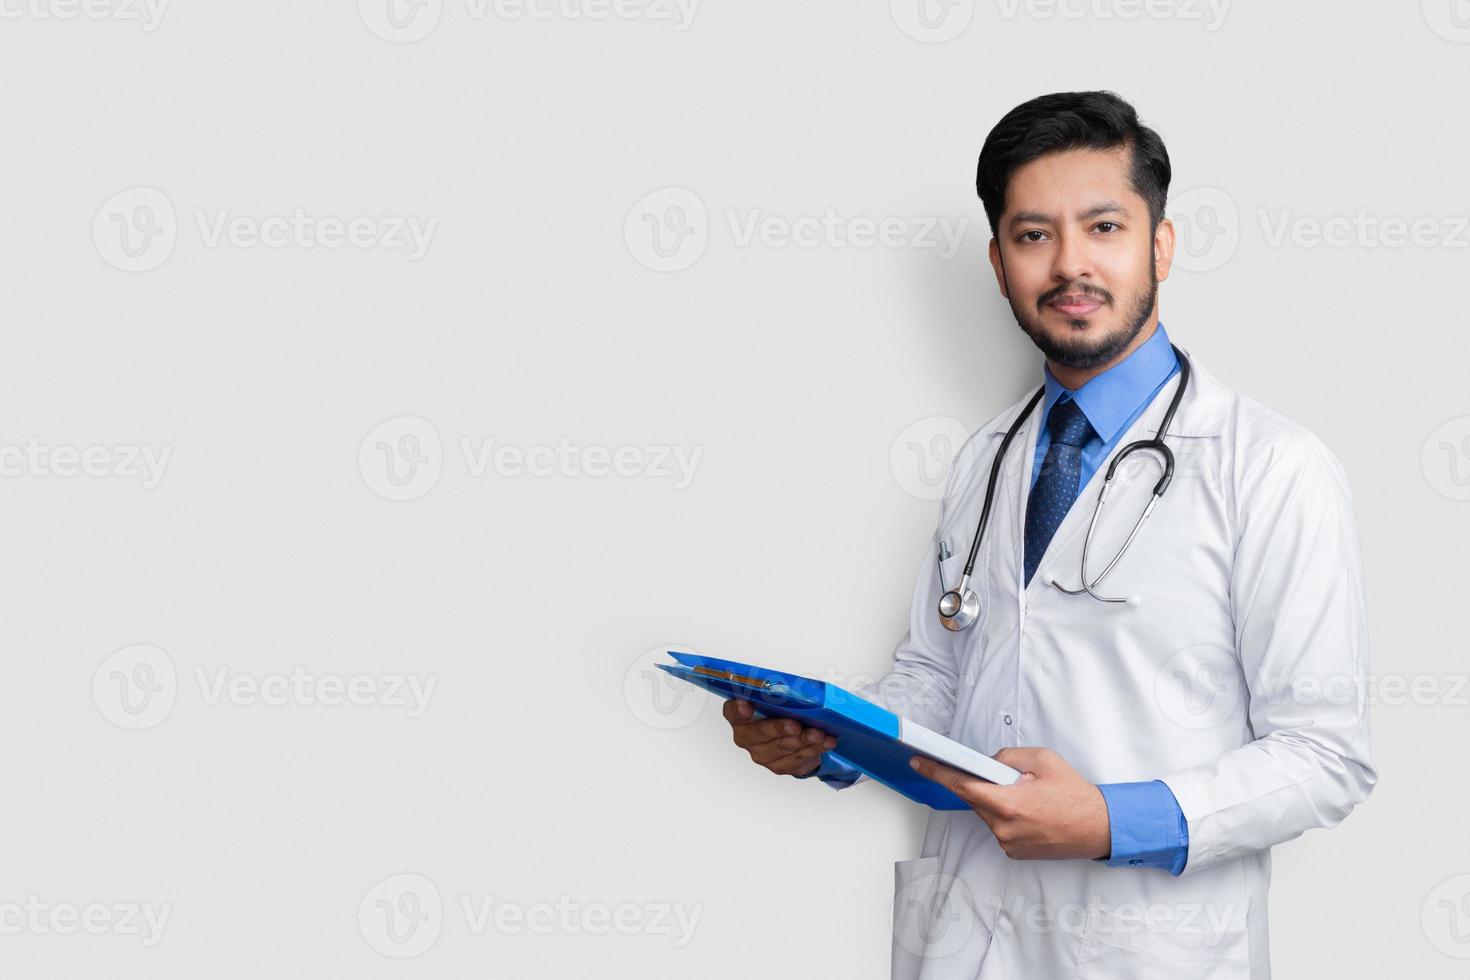 läkare i labrock som rymmer patientmapp eller medicinska anteckningar som ser kameran, isolerad på vit bakgrund foto